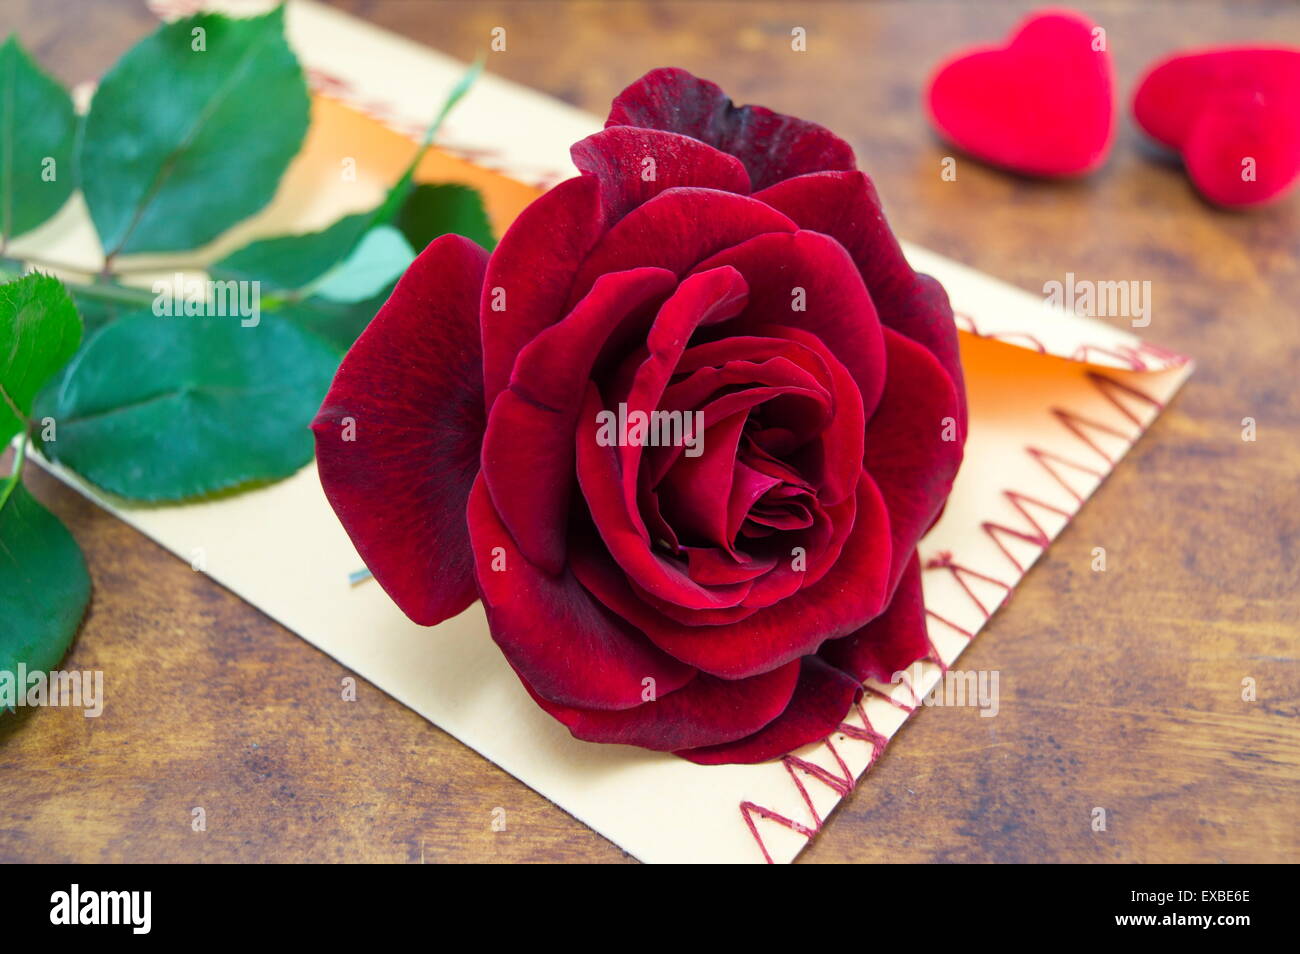 Rose und einen handgemachten Liebesbrief auf einem Tisch mit Herzen verziert Stockfoto